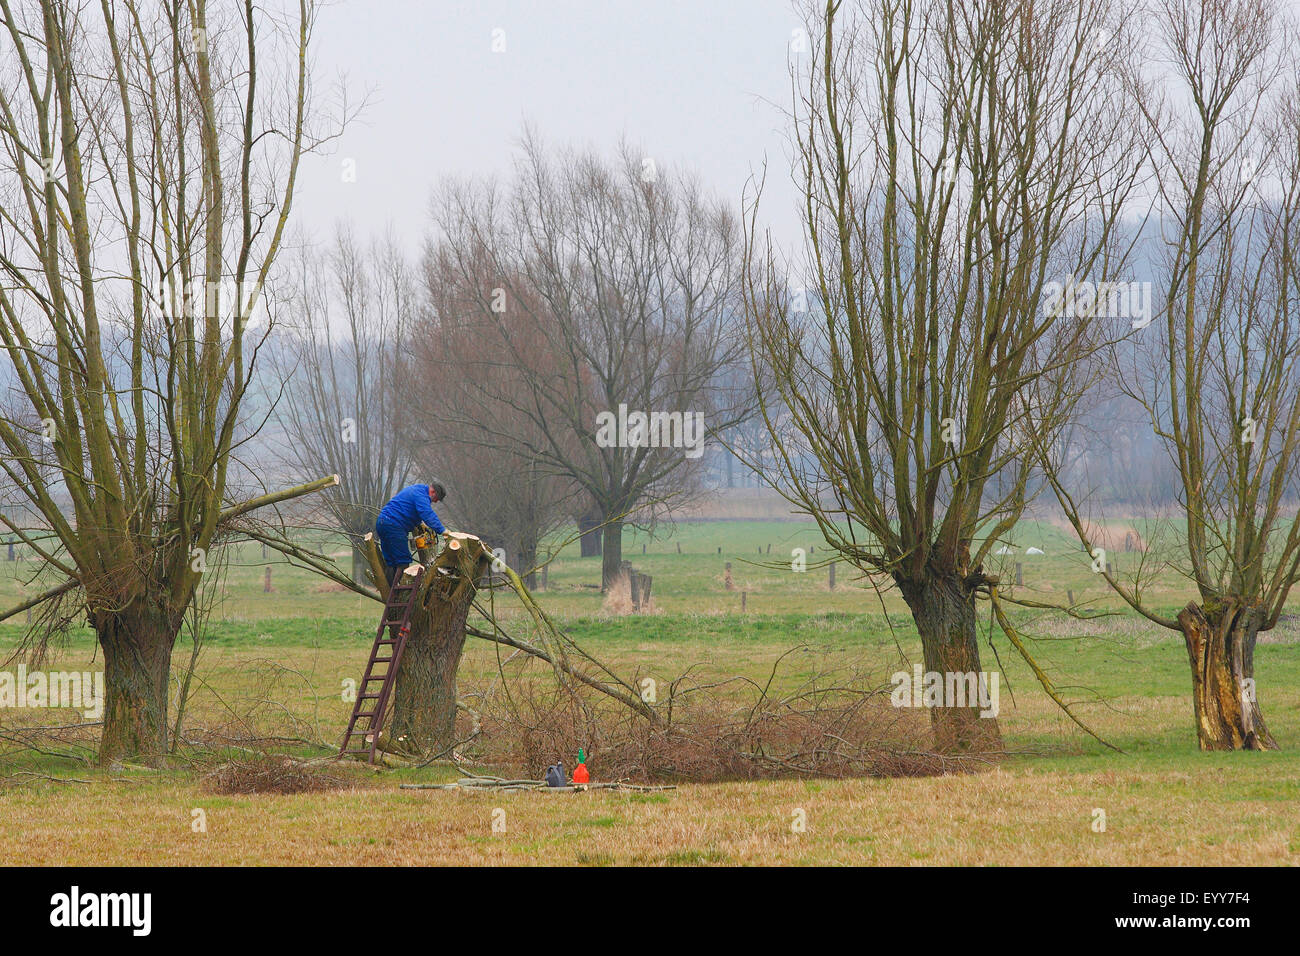 Mimbre, sauce (Salix spec.), voluntario de la poda de árboles de sauce durante las obras de mantenimiento en reserva natural, Bélgica Foto de stock